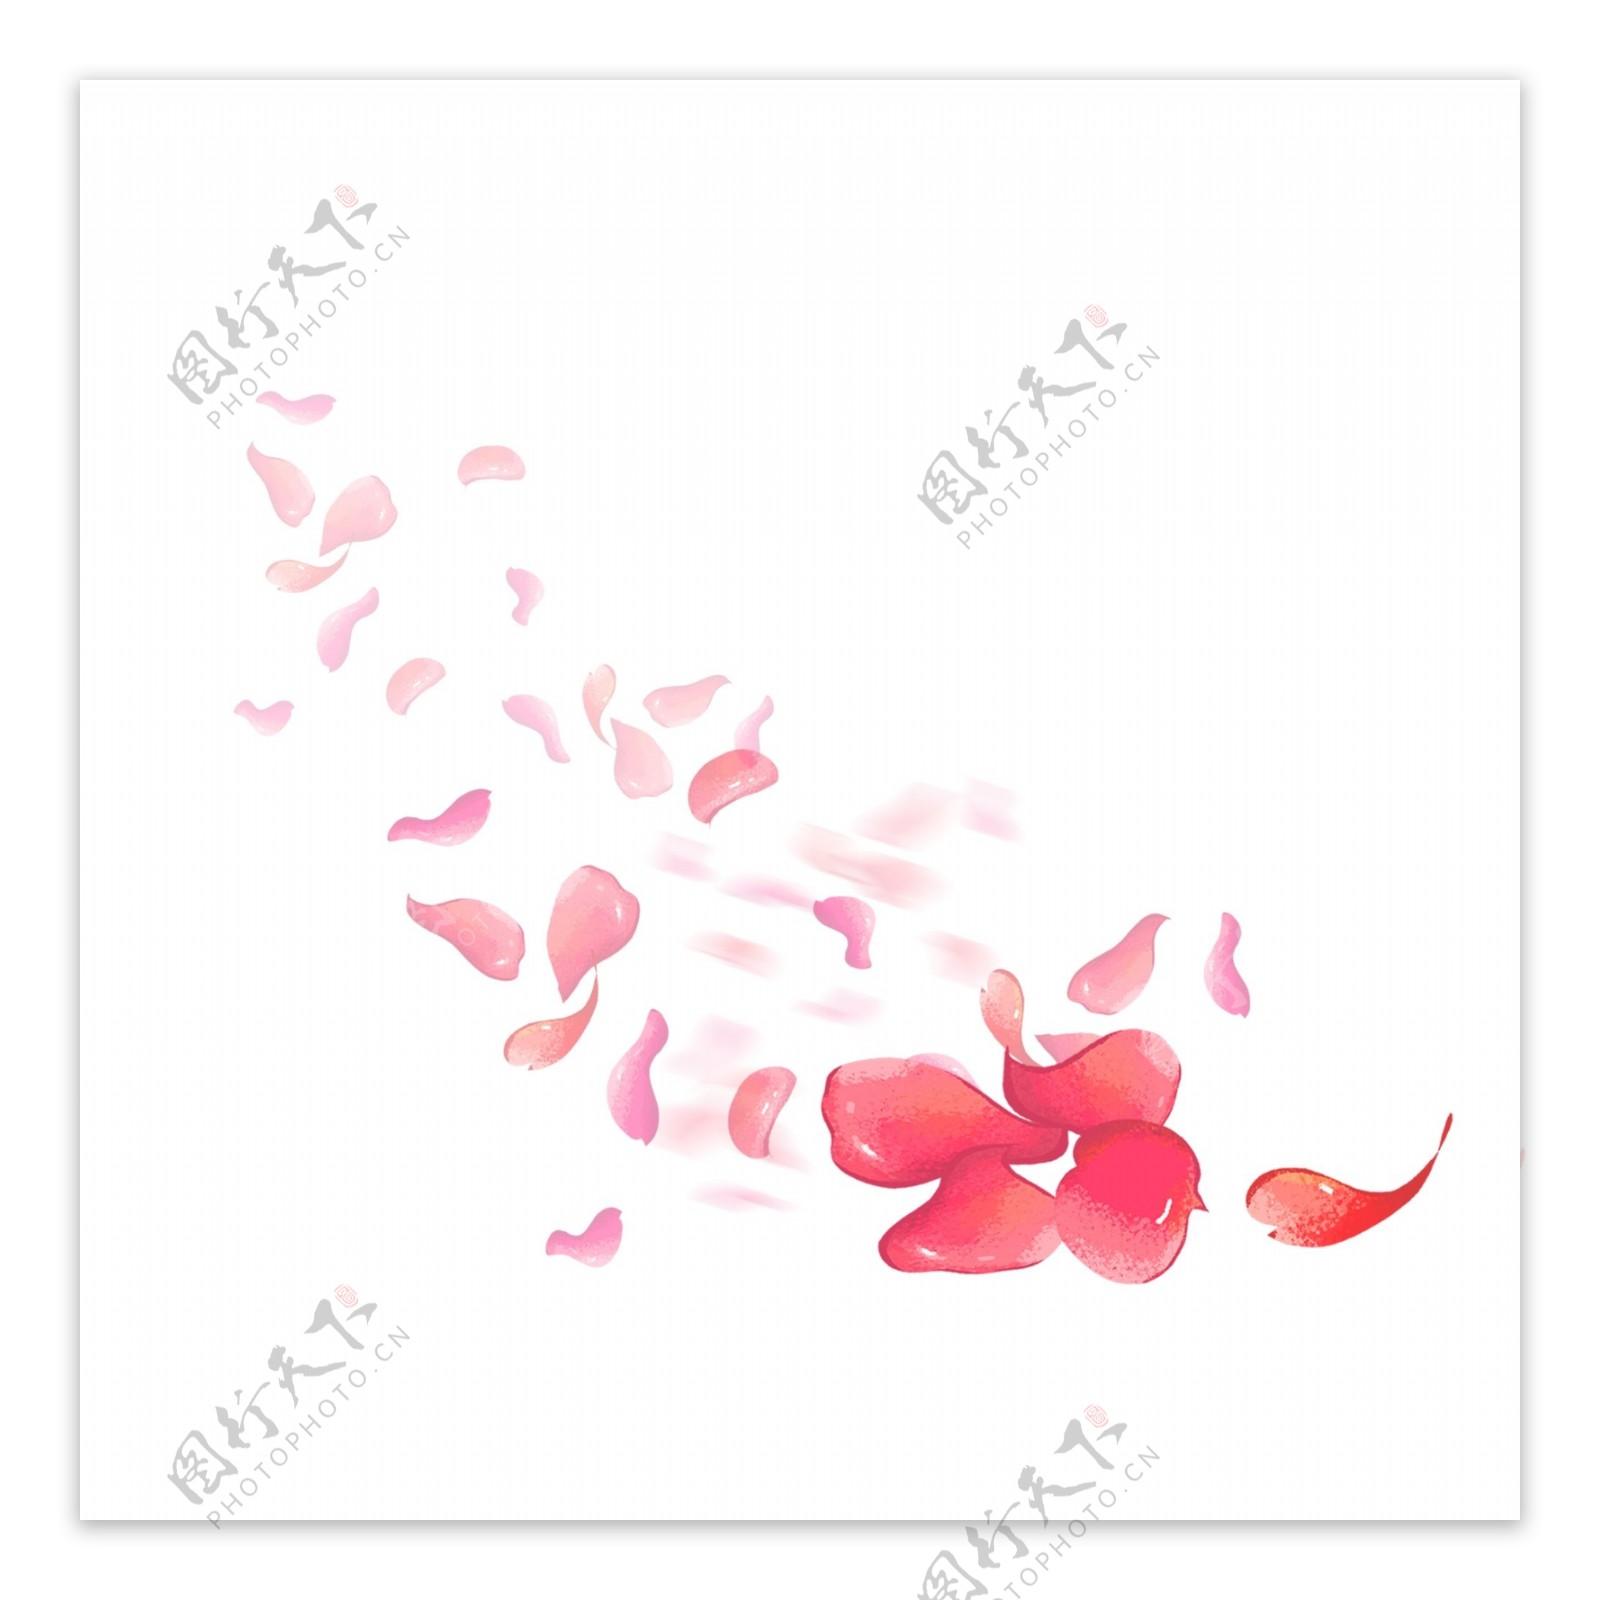 唯美浪漫手绘飞舞漂浮花瓣元素免抠图